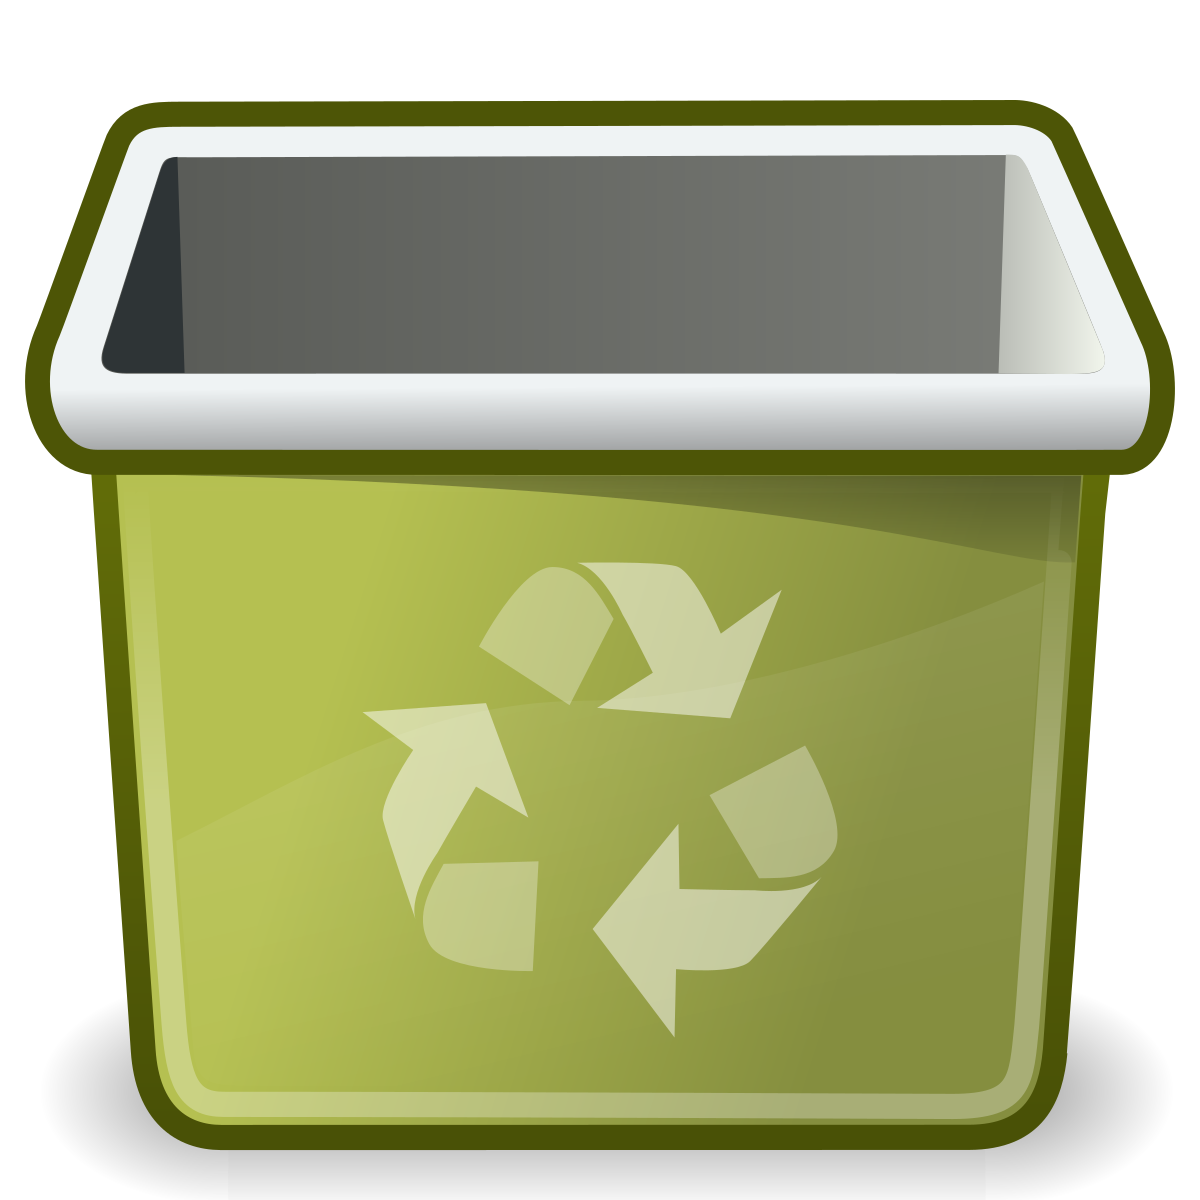 A computer system restore icon or a trash bin icon.